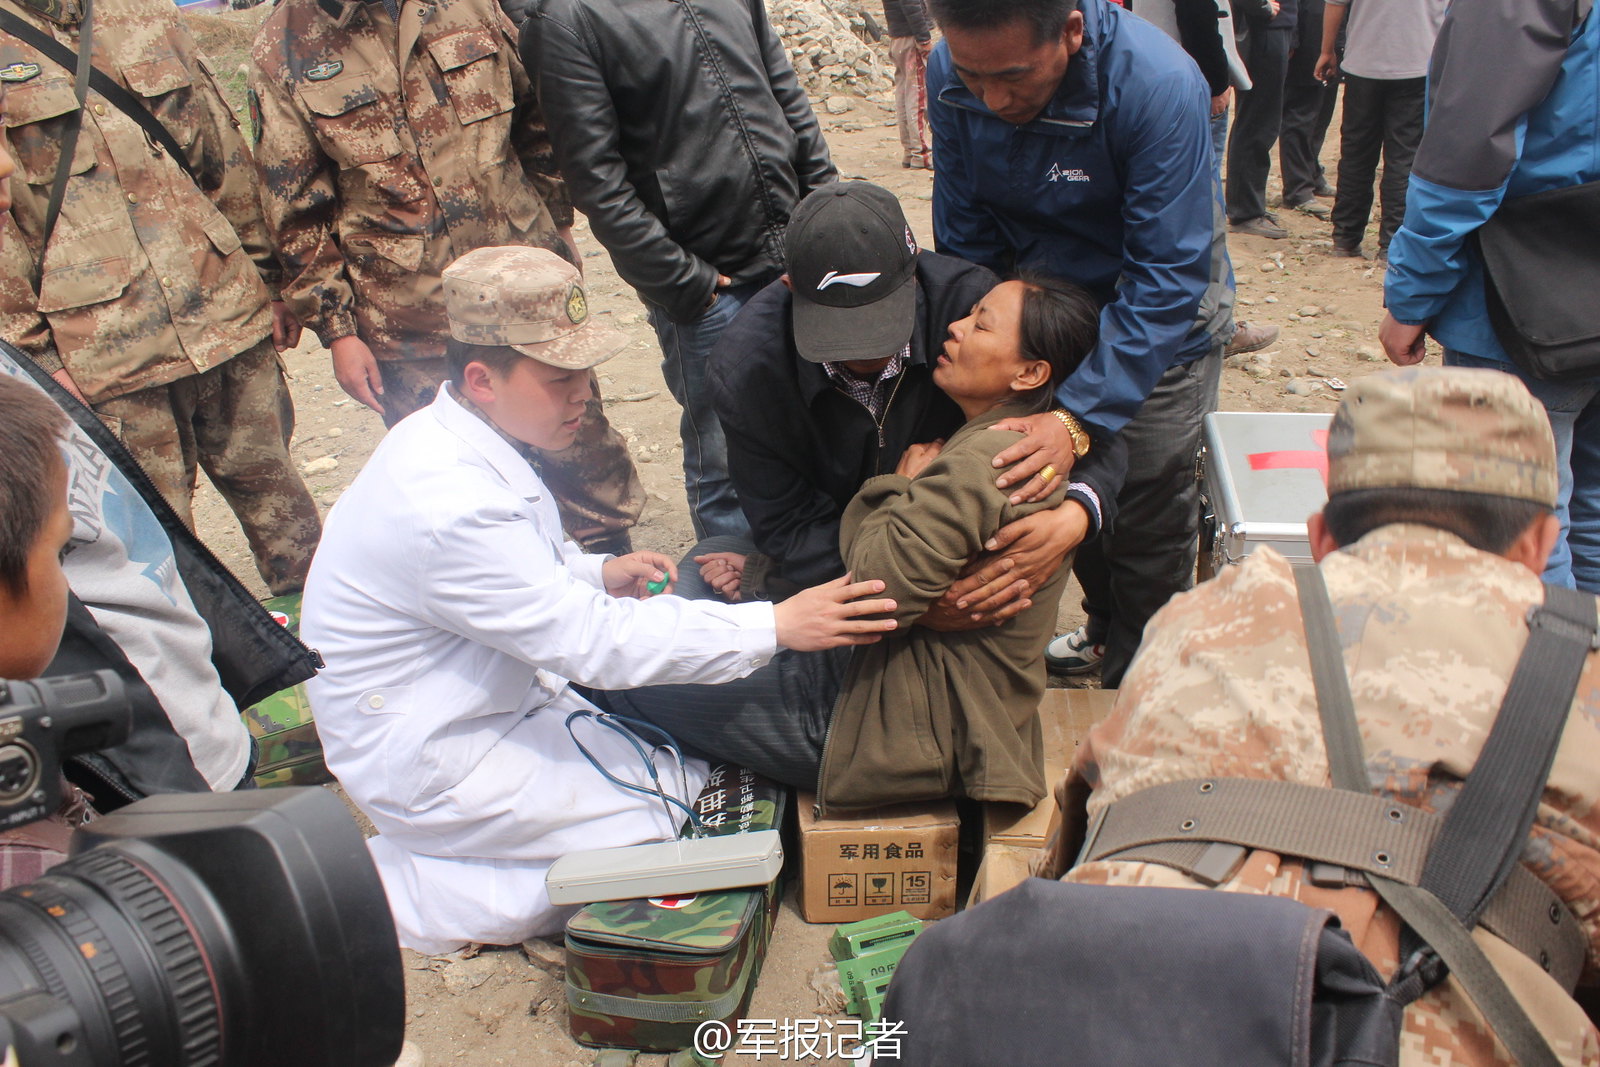 2015年4月30日，經過解放軍、武警官兵、當地幹部及工程人員兩個晝夜的奮戰，位於西藏日喀則市工業園區的受災群眾安置點基本建成，這個安置點也是此次西藏地震最大規模的安置點，目前已搭建帳篷3,500頂，可供10,000餘名受災群眾居住。